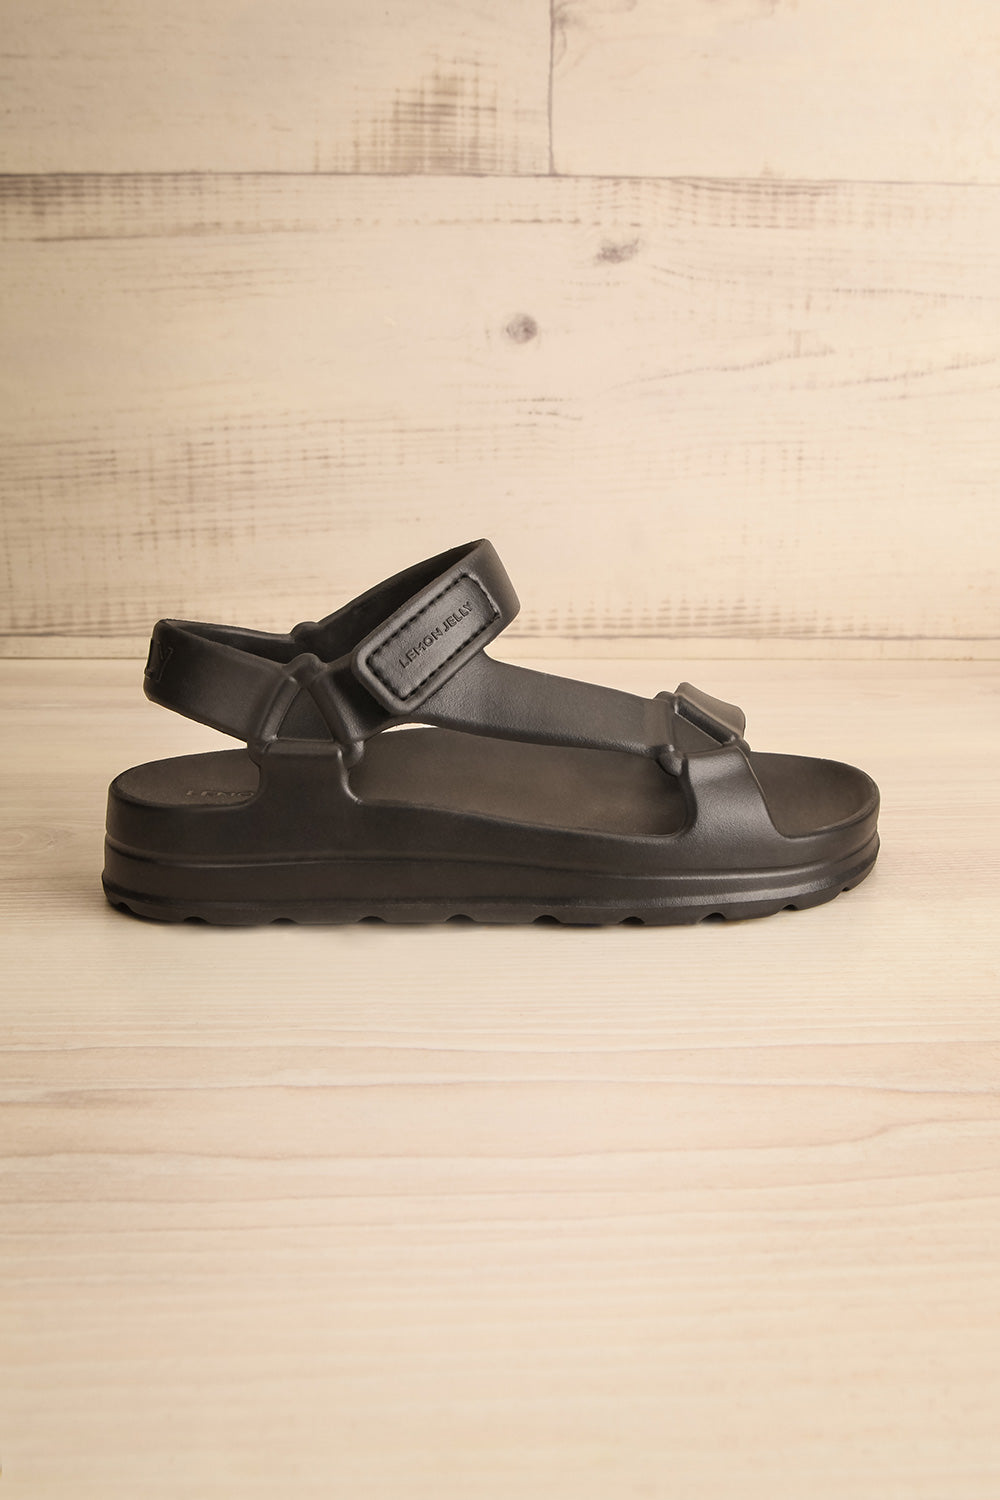 Nollah Black Sandals w/ Velcro Closure | La petite garçonne side view